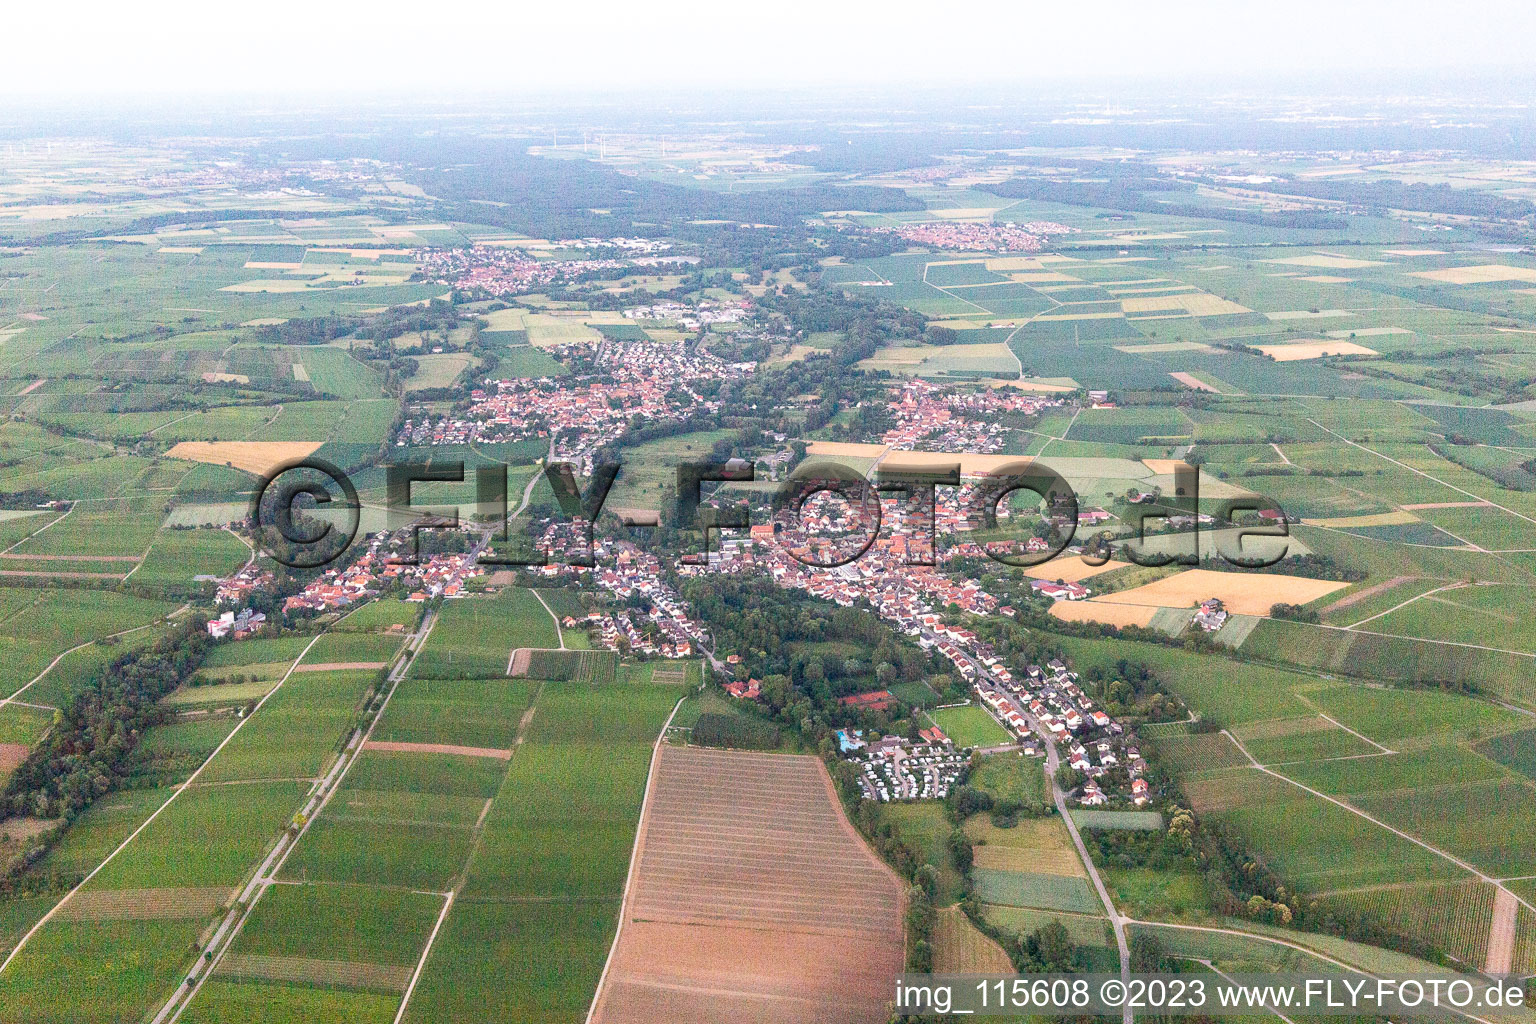 Ortsteil Billigheim in Billigheim-Ingenheim im Bundesland Rheinland-Pfalz, Deutschland von der Drohne aus gesehen